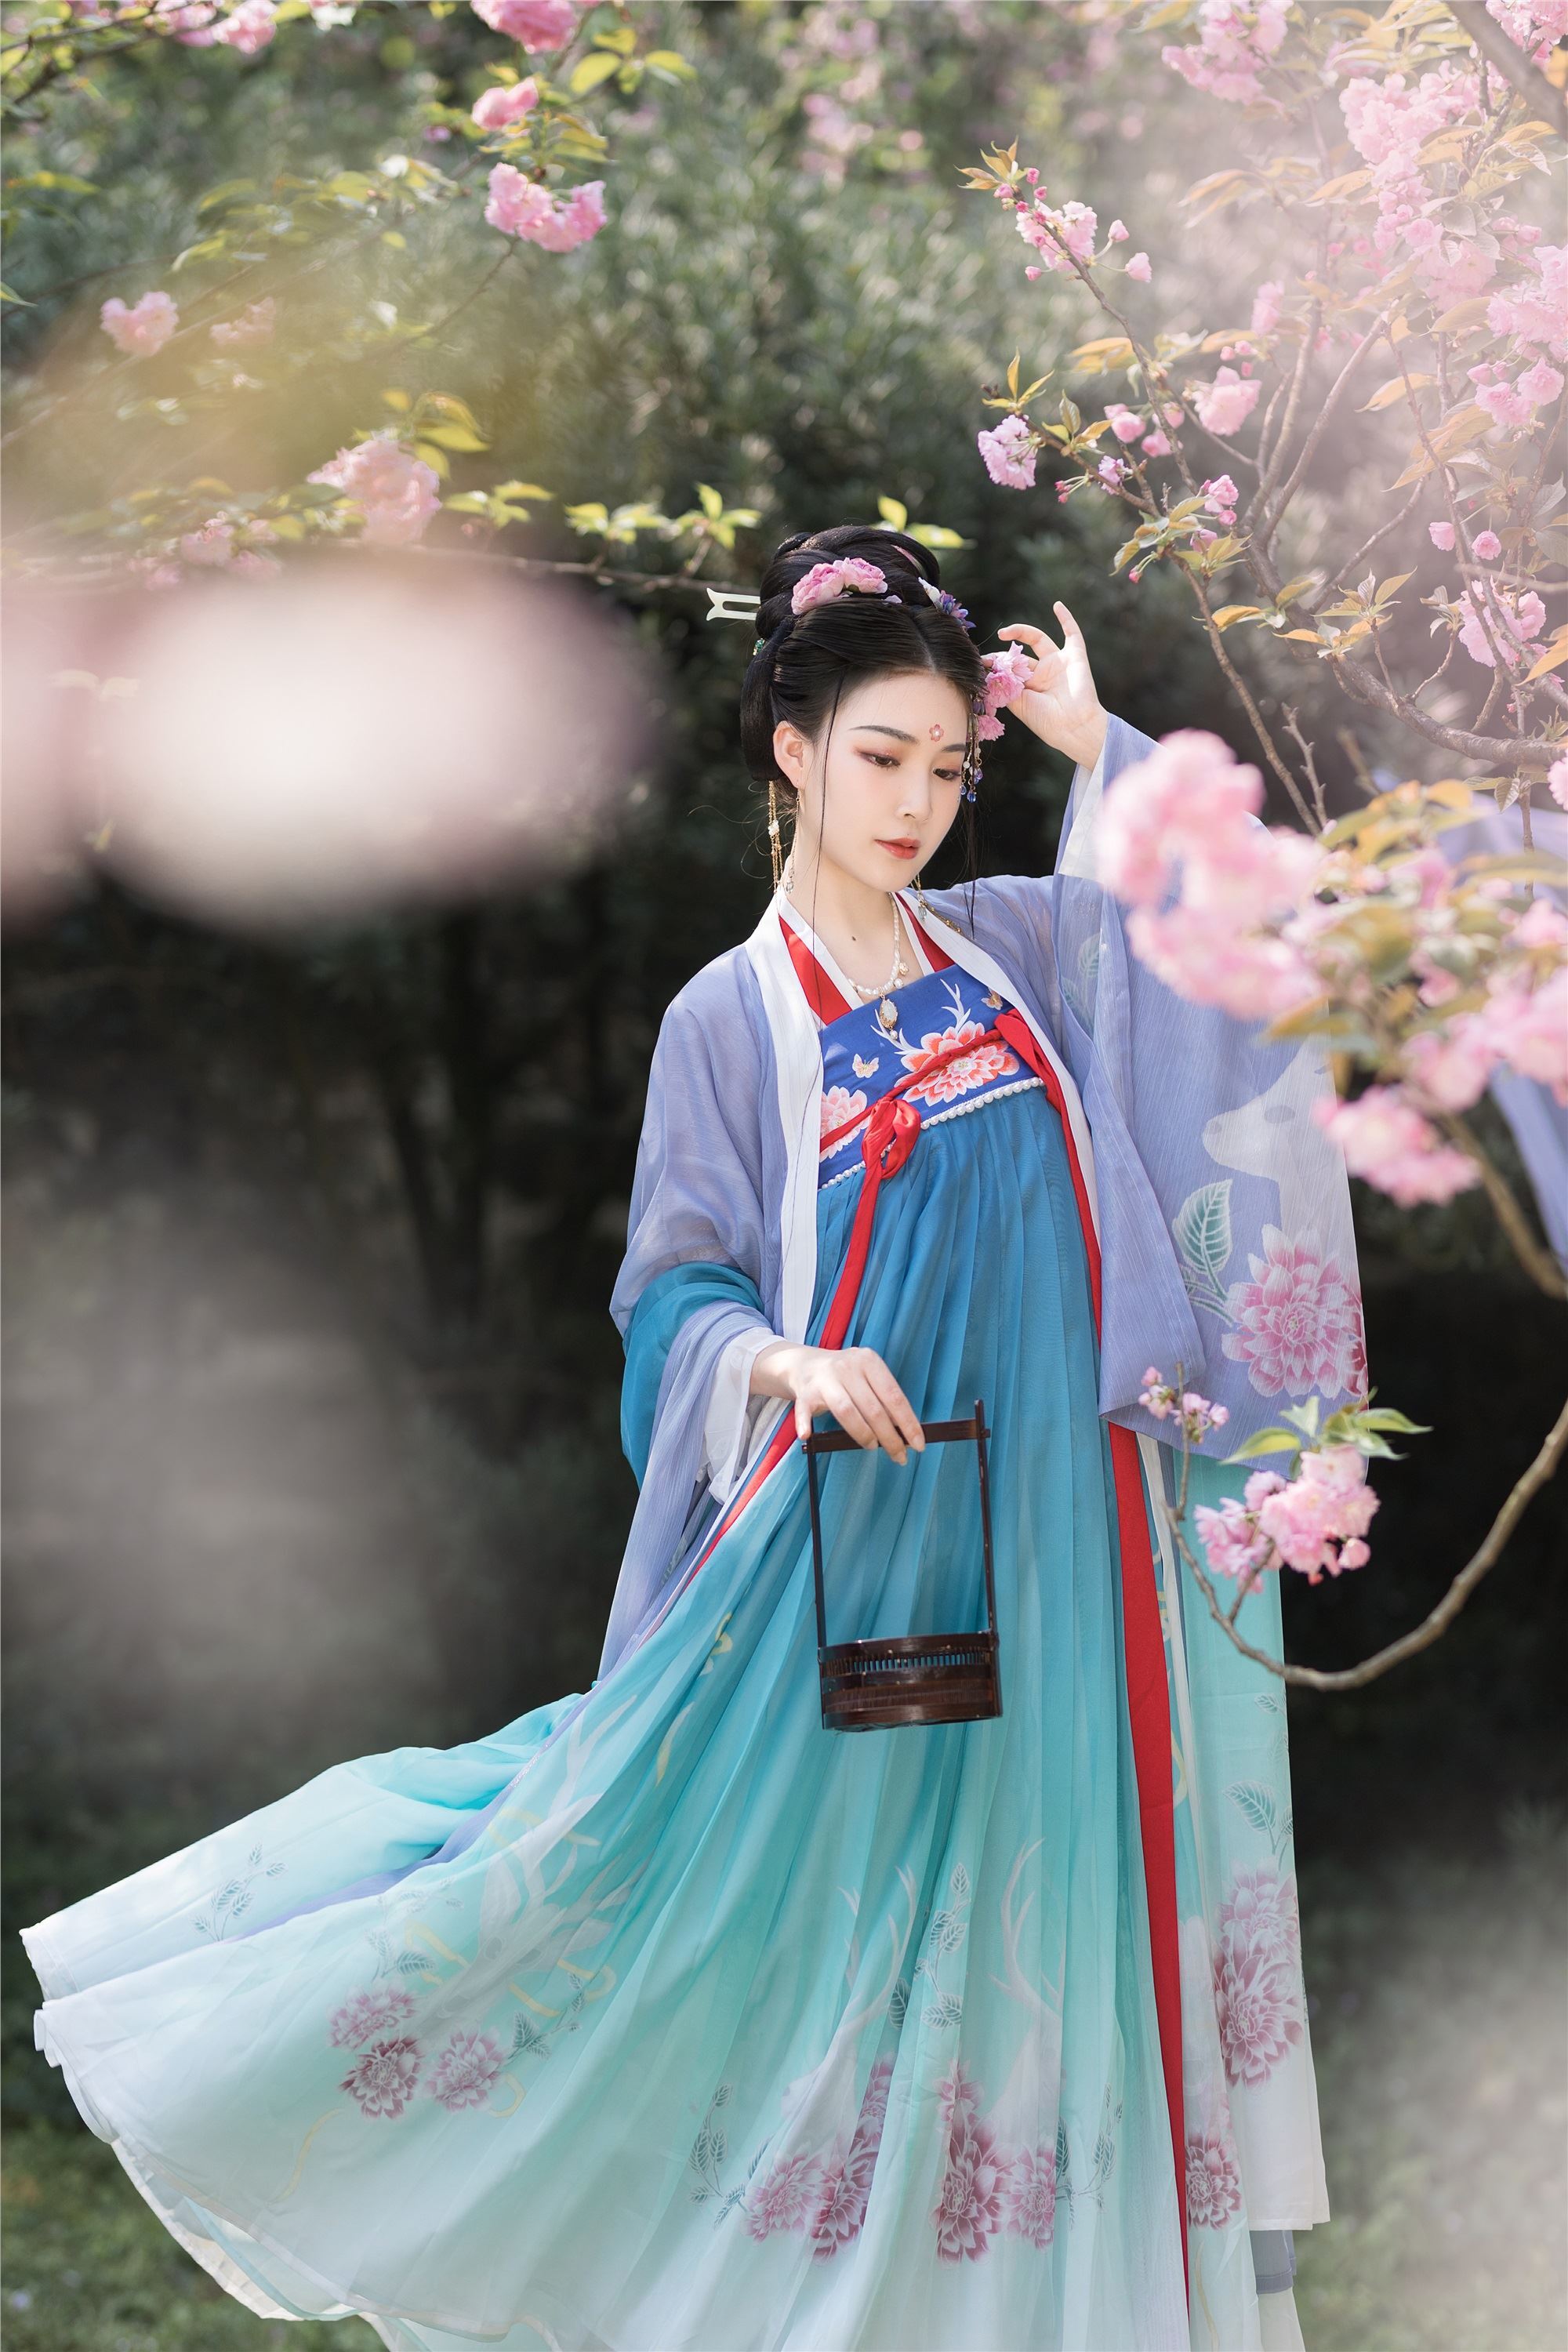 YITUYU Art Picture Language 2021.09.04 Beauty Like Sakura Qingqing